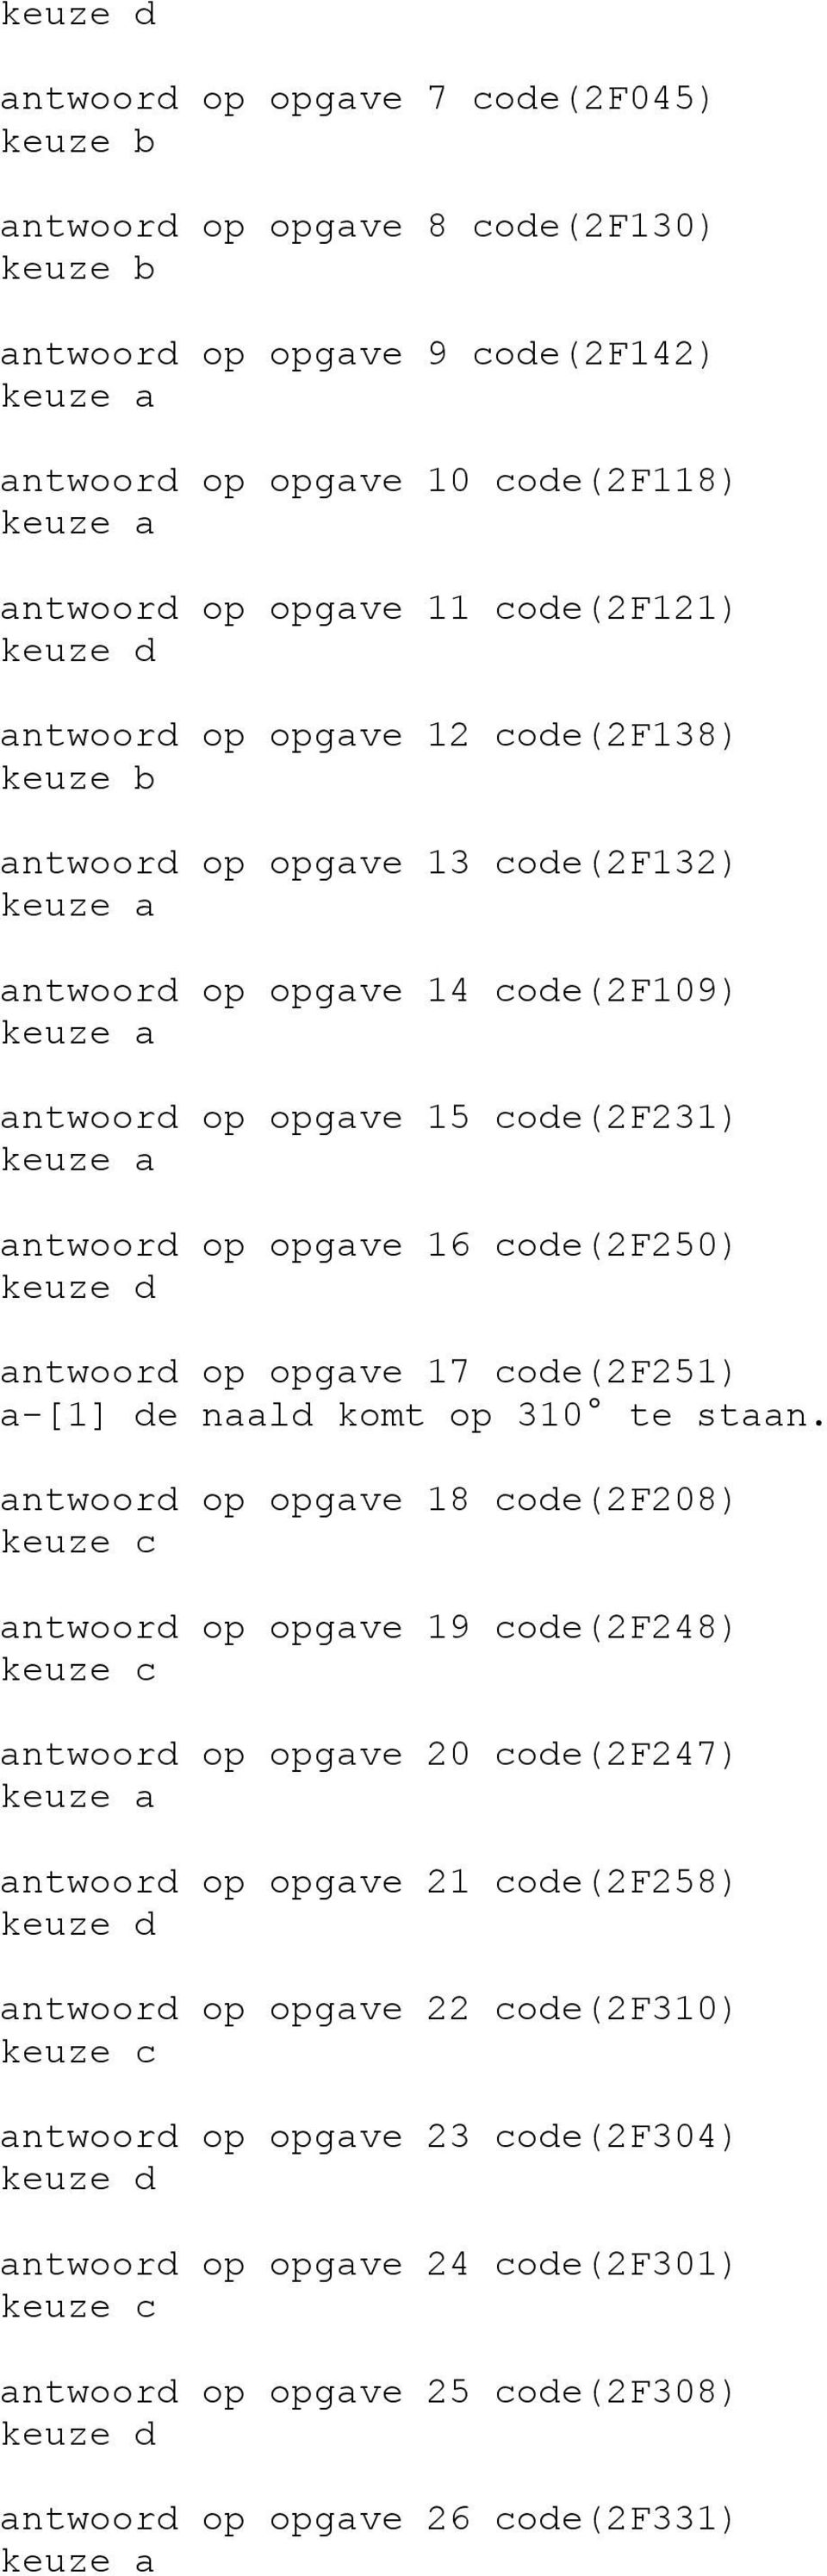 antwoord op opgave 17 code(2f251) a-[1] de naald komt op 310 te staan.